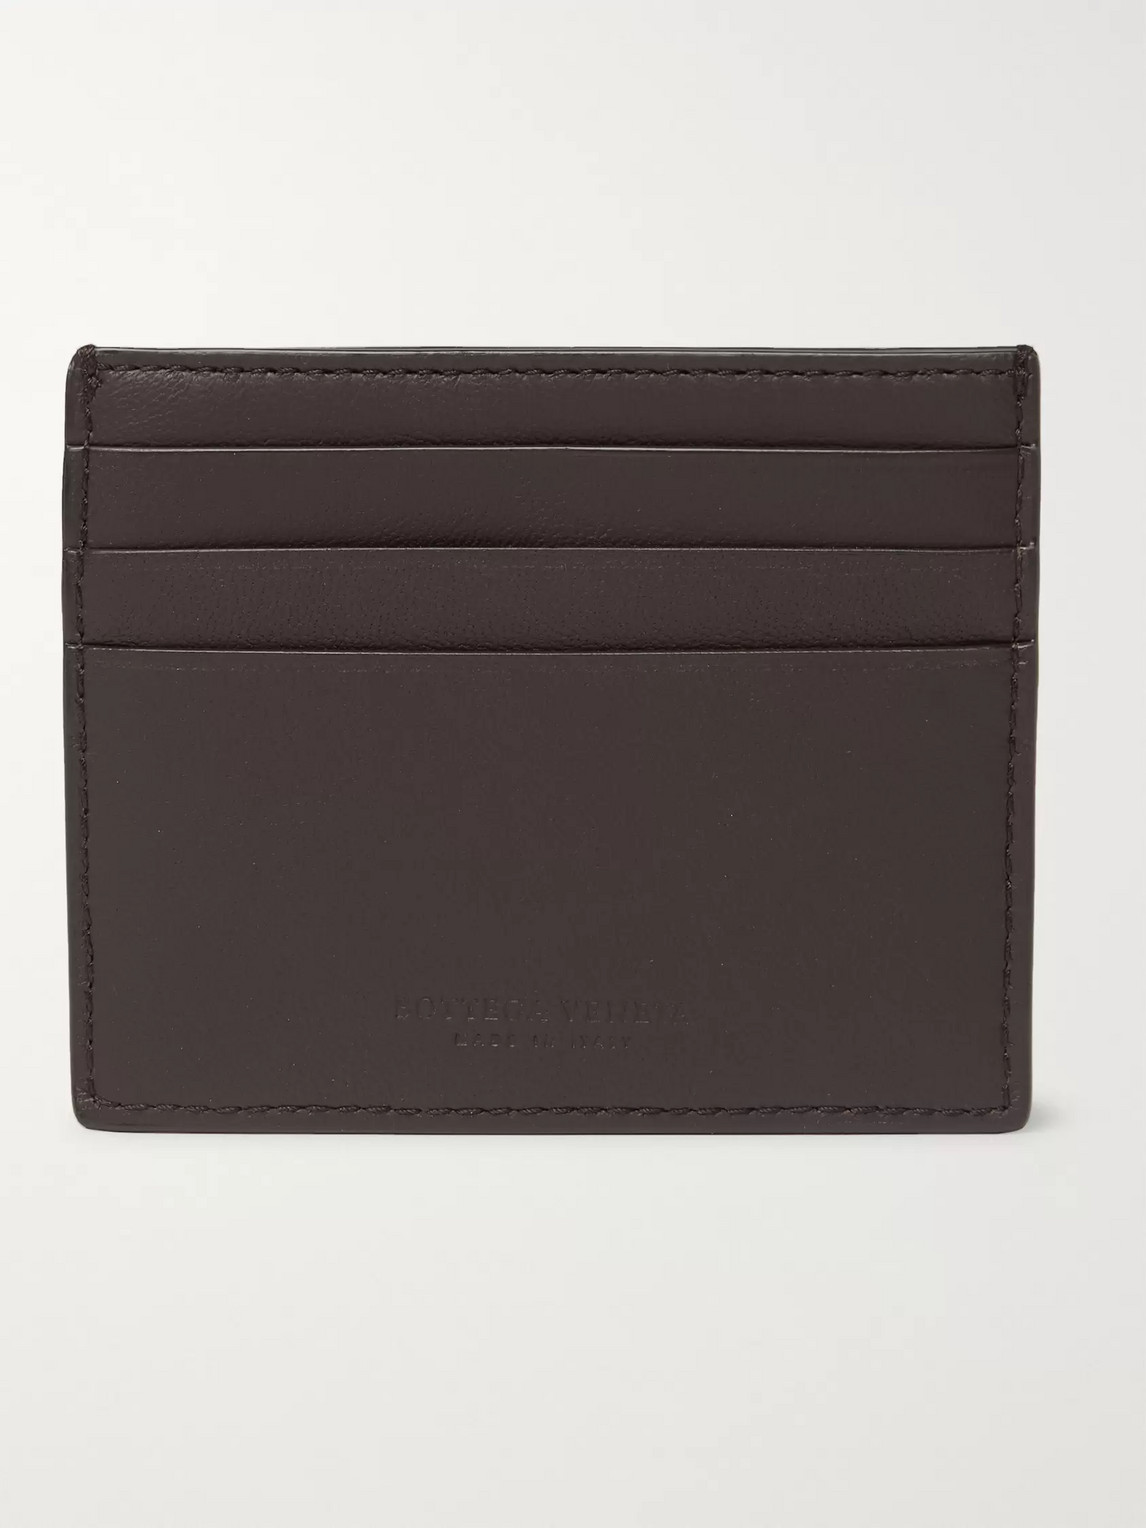 Bottega Veneta Intrecciato Leather Cardholder In Brown